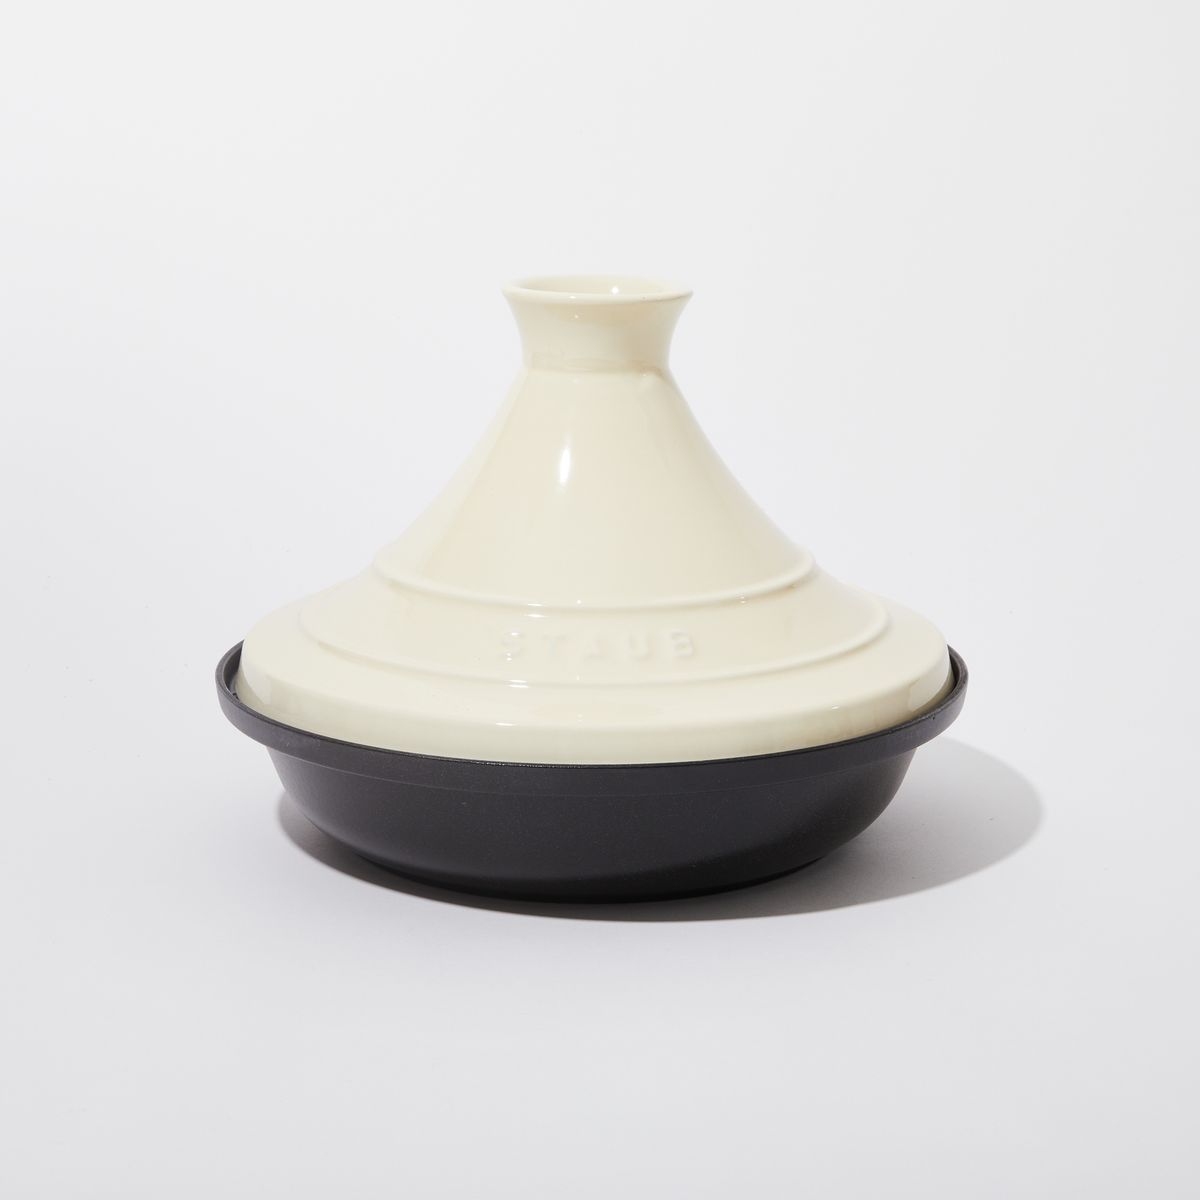 Ceramic Cream lid and black base